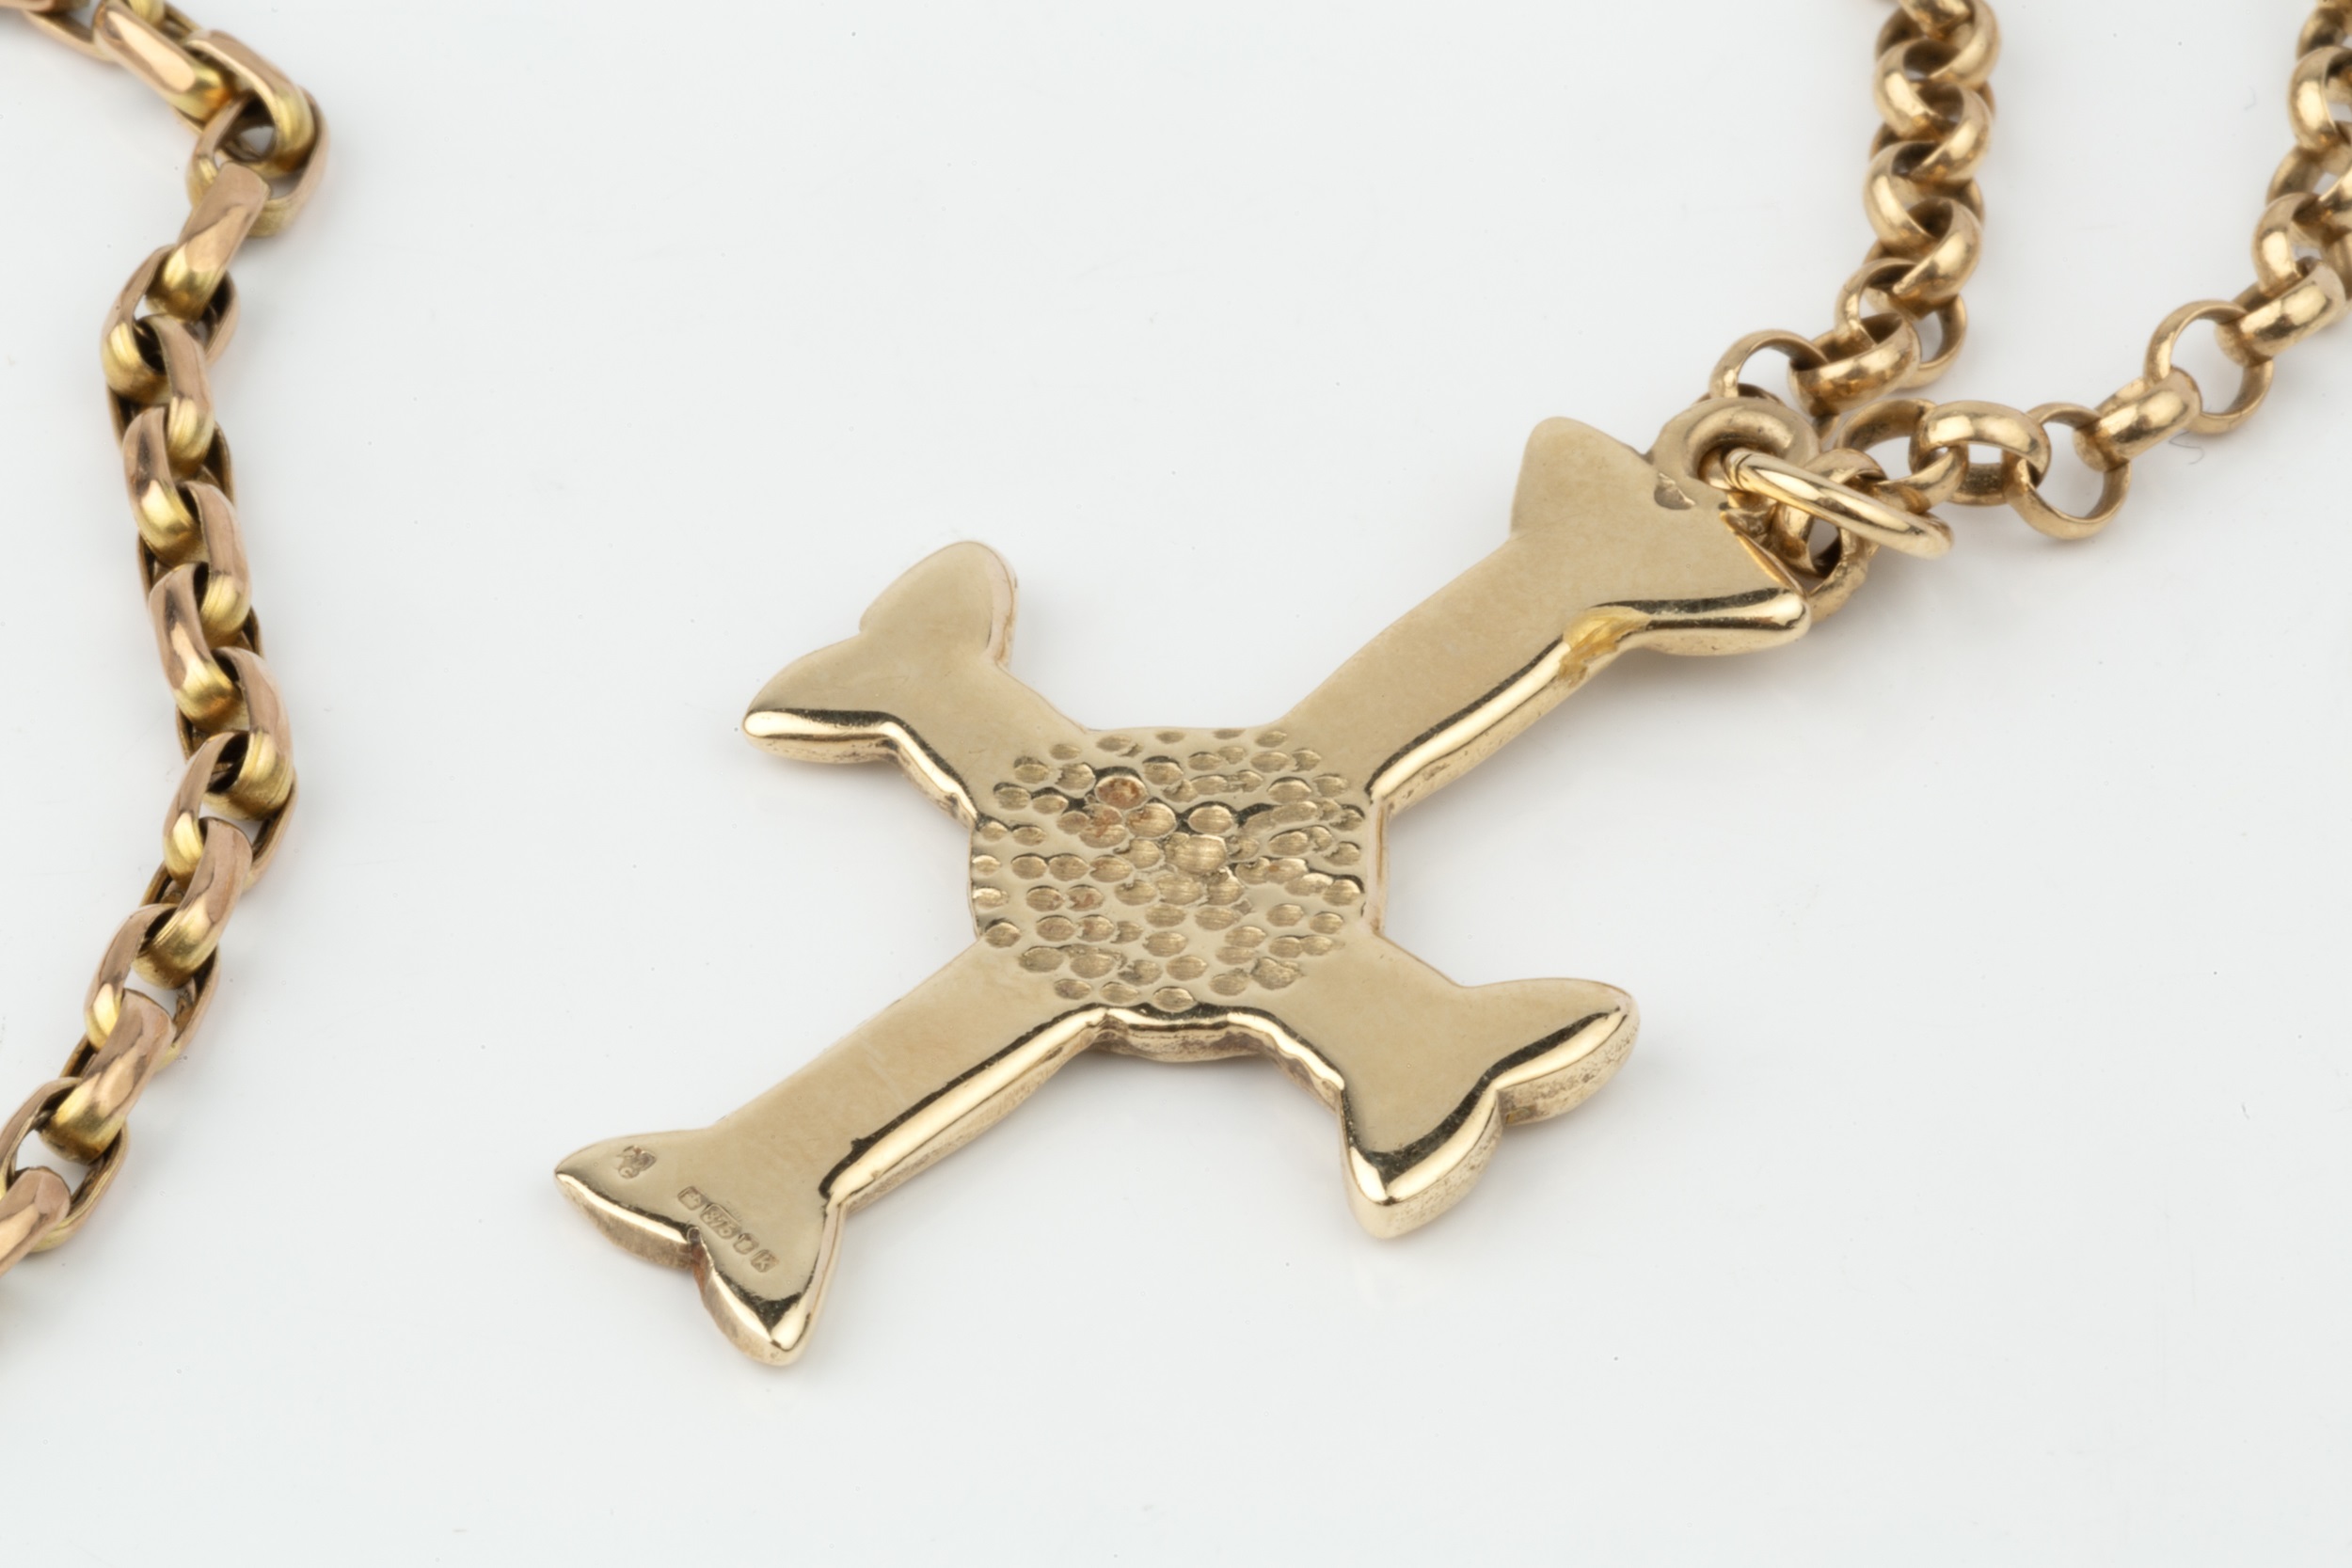 A 9ct gold cross pendant, of Celtic knot design, on a 9ct gold belcher link chain, pendant 3.7cm - Bild 2 aus 2